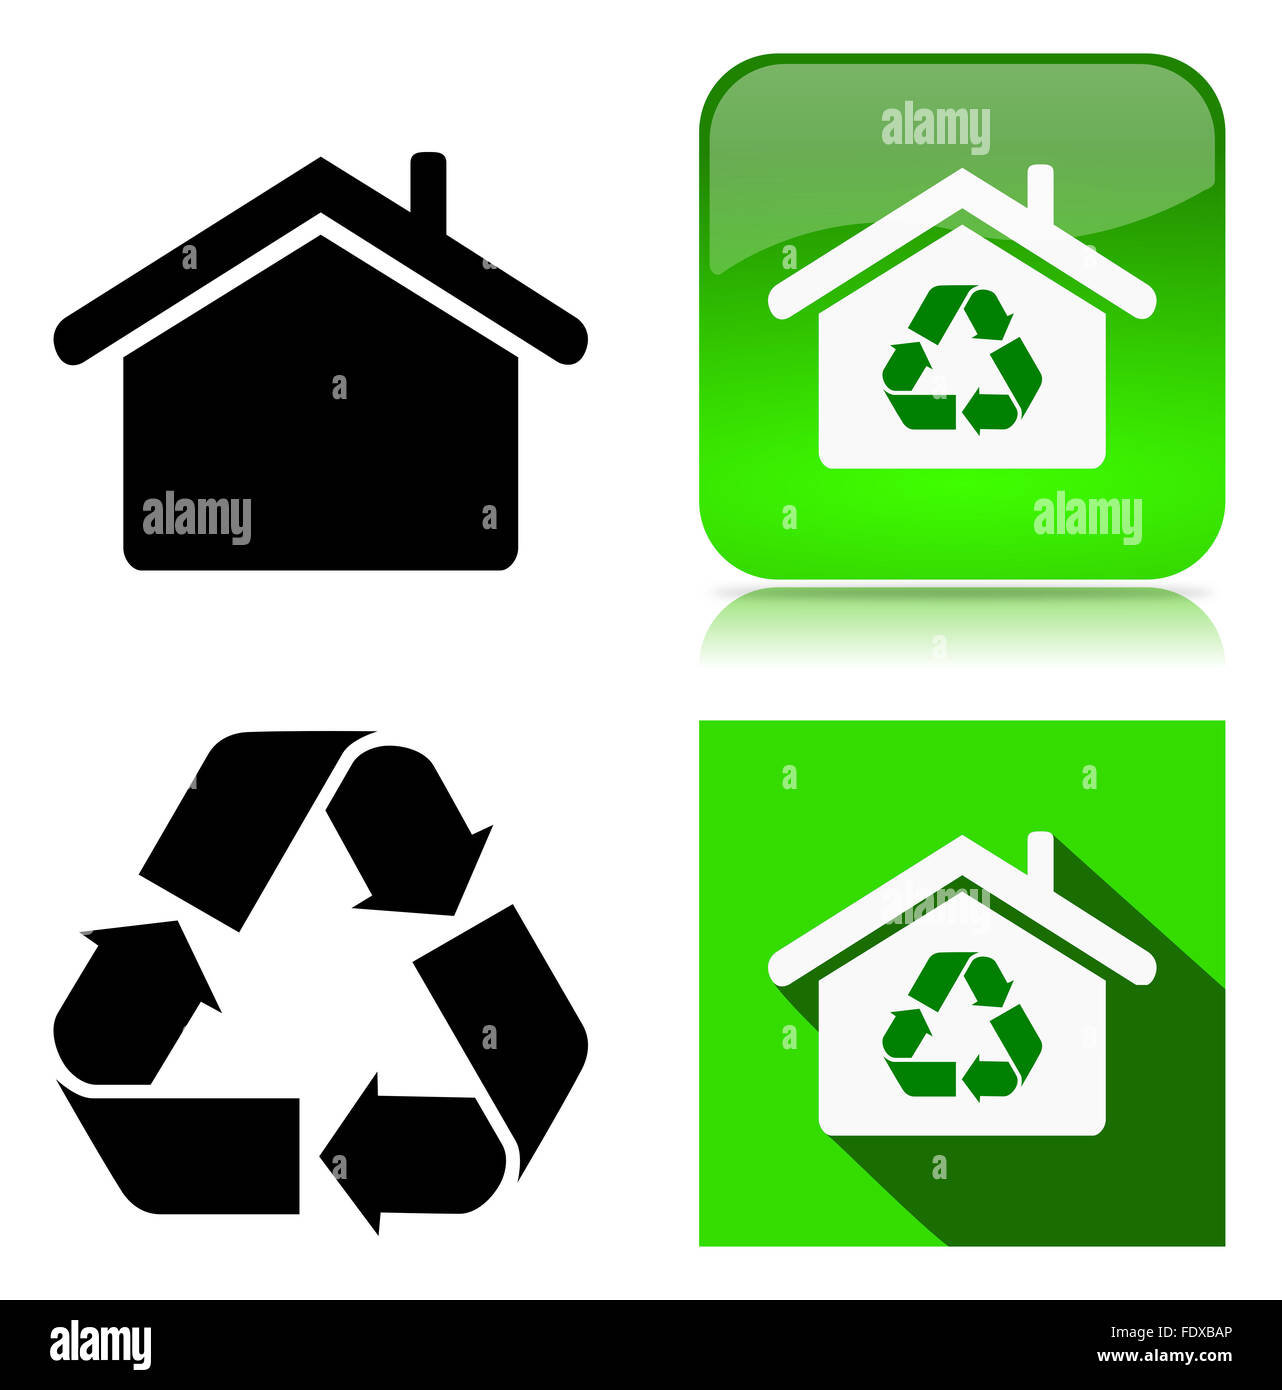 Accueil vert Environnement Recyclage Bâtiment durable série icône Illustration sur fond blanc Banque D'Images